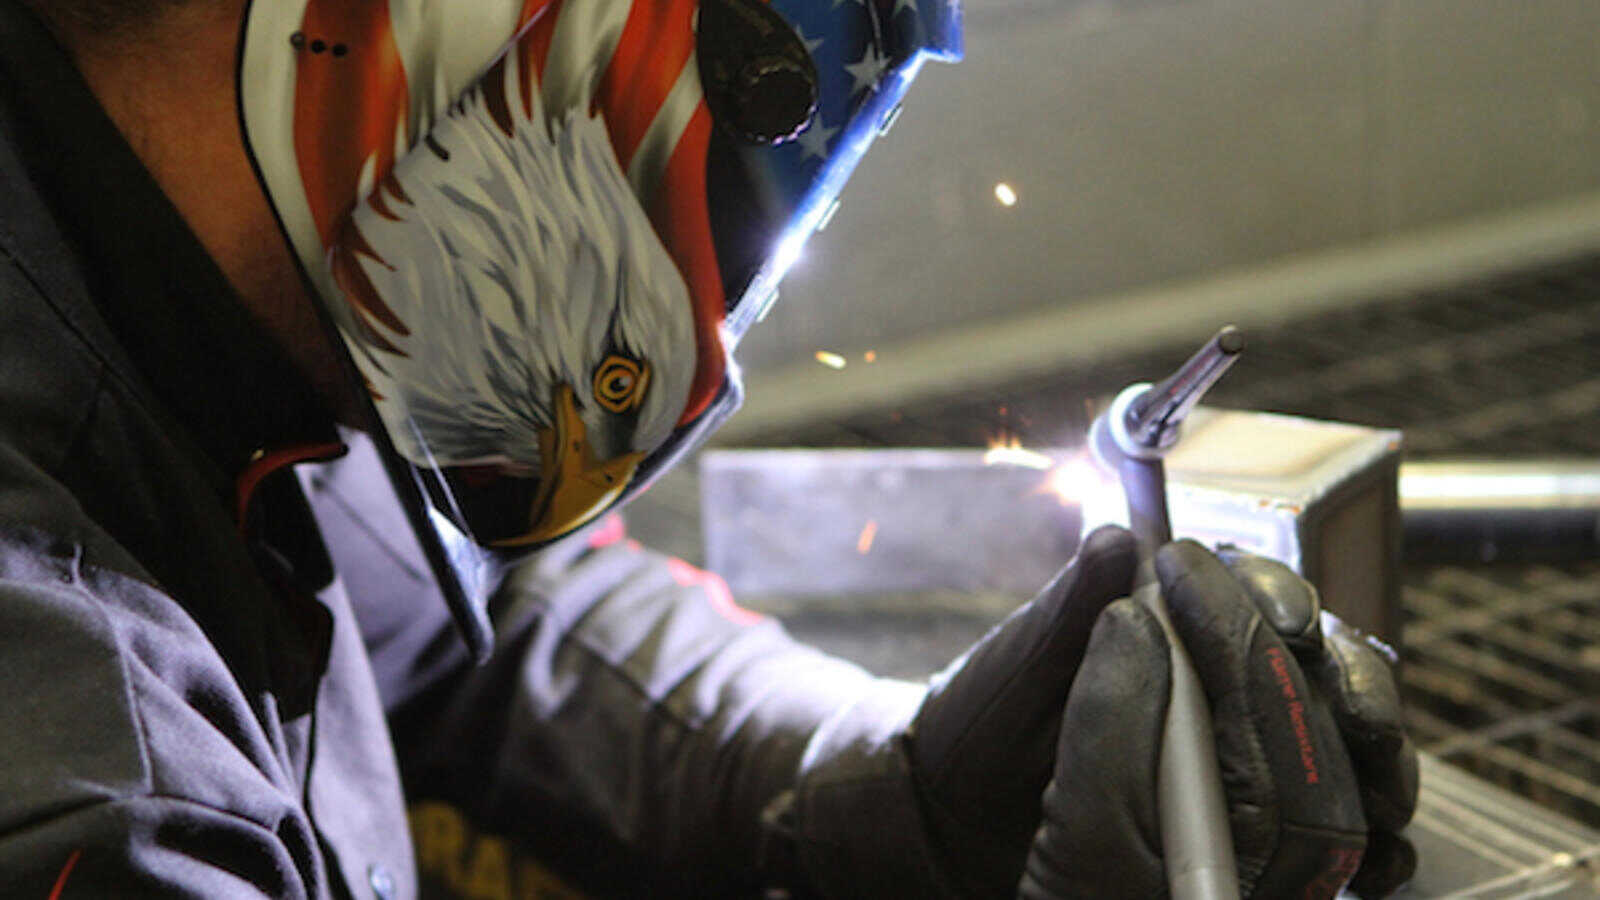 Up close view of a Denver welding student using an ARC welder.